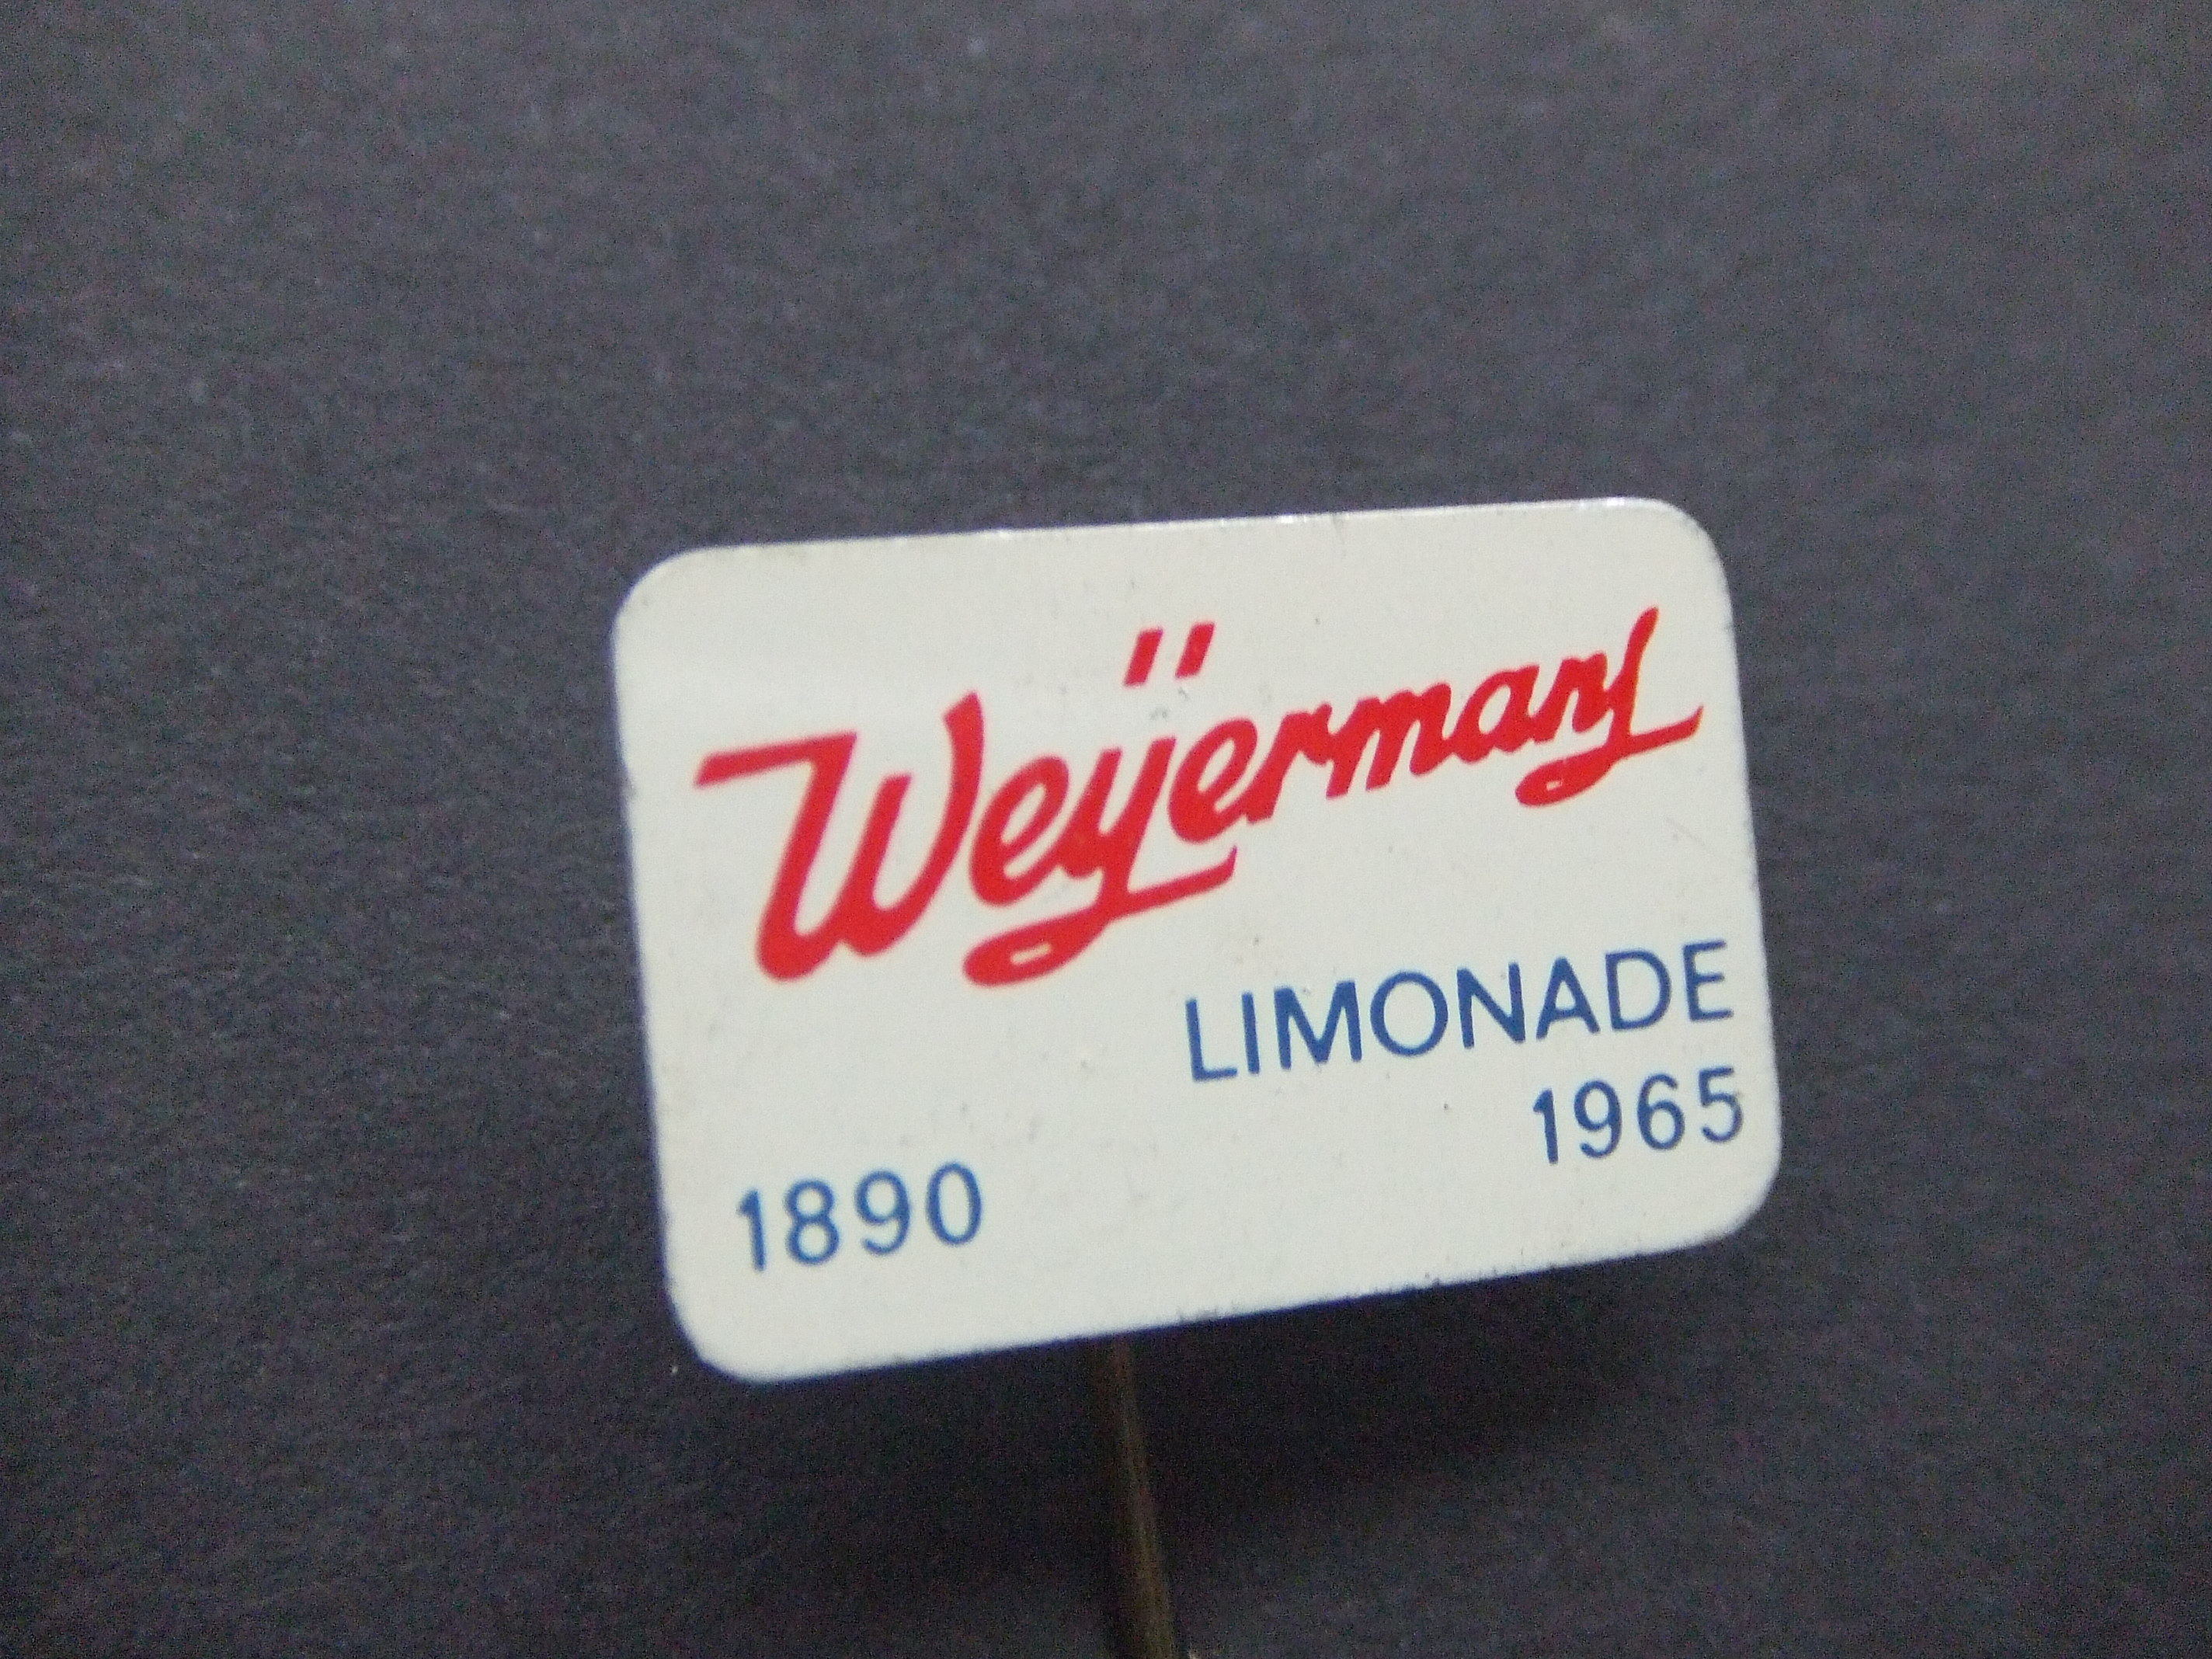 Weijermans limonade Leiden 75 jarig jubileum